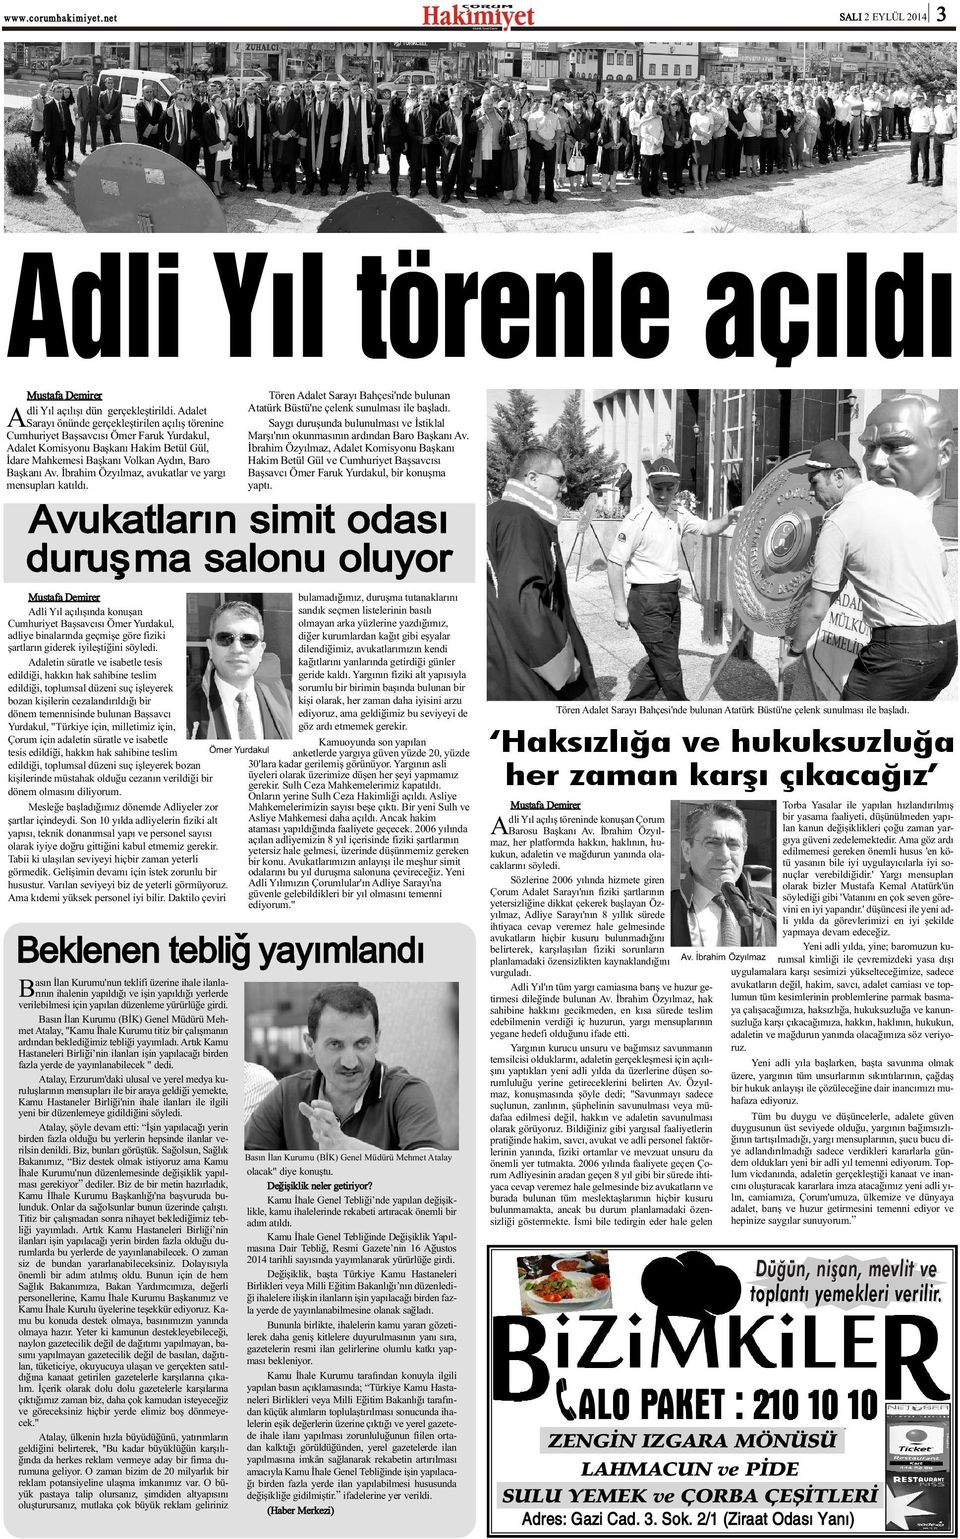 Ýbrahim Özyýlmaz, avukatlar ve yargý mensuplarý katýldý. Tören Adalet Sarayý Bahçesi'nde bulunan Atatürk Büstü'ne çelenk sunulmasý ile baþladý.